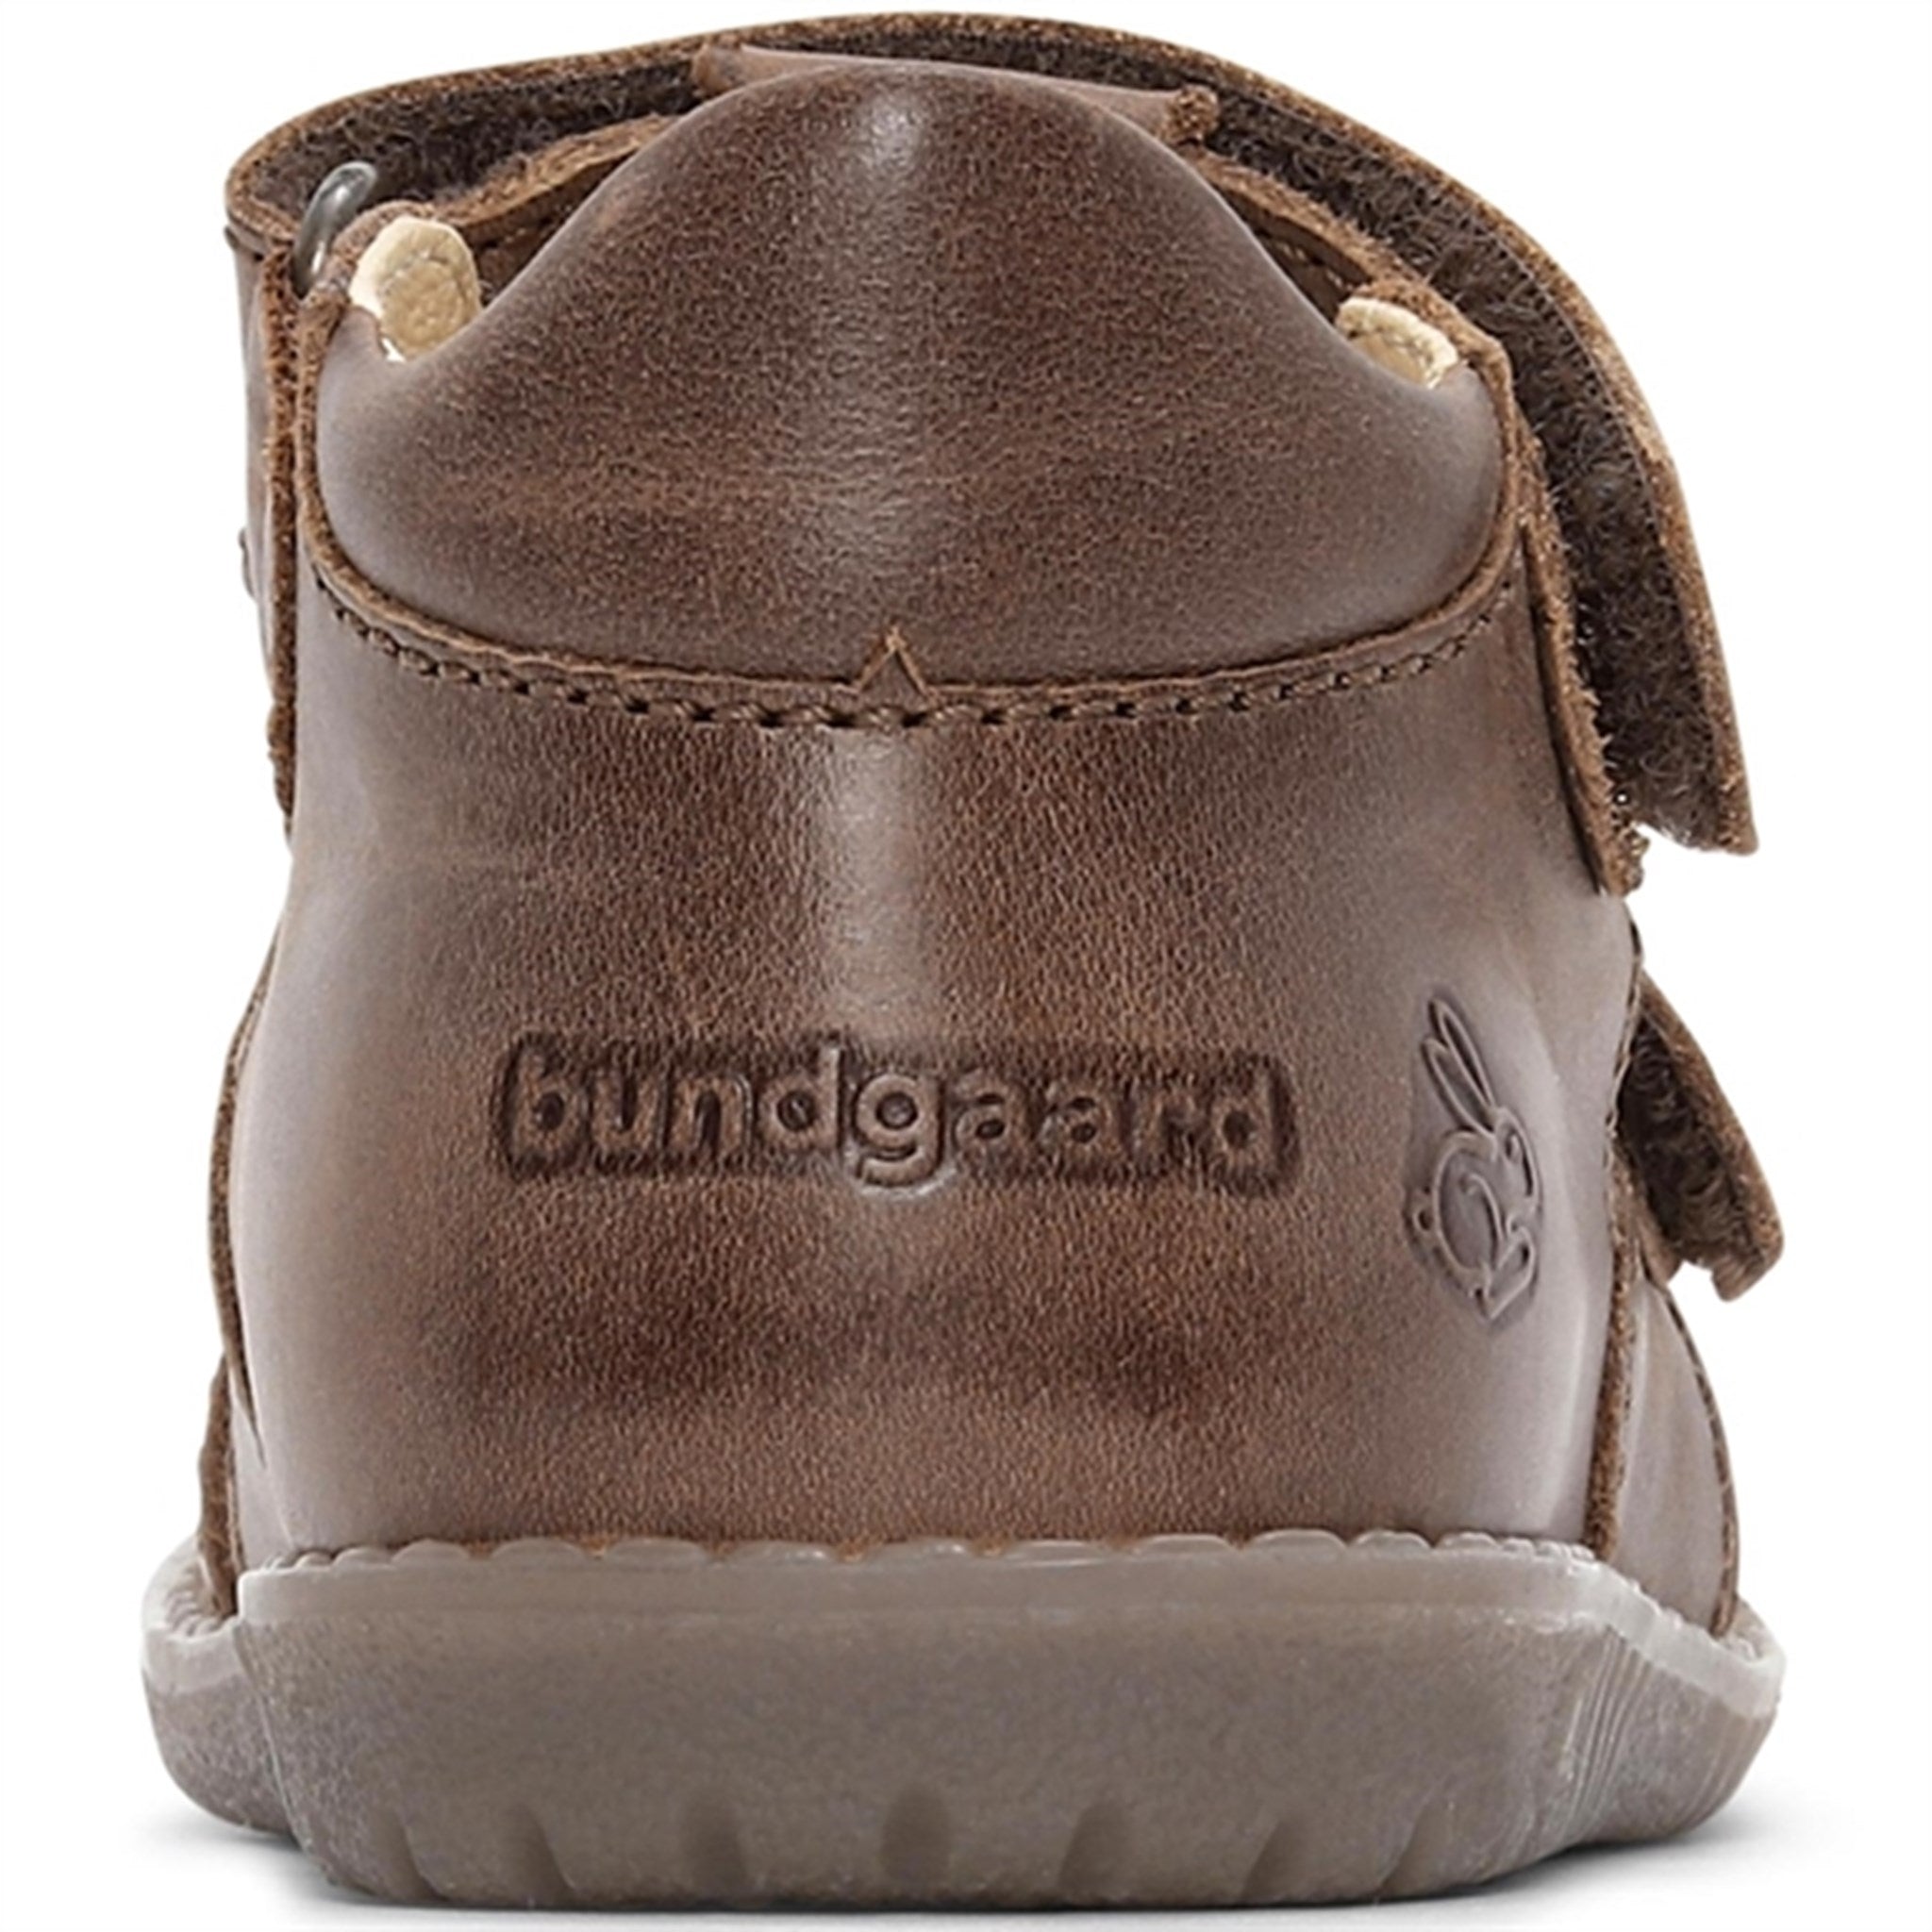 Bundgaard Sandal Ranjo II Brown 5